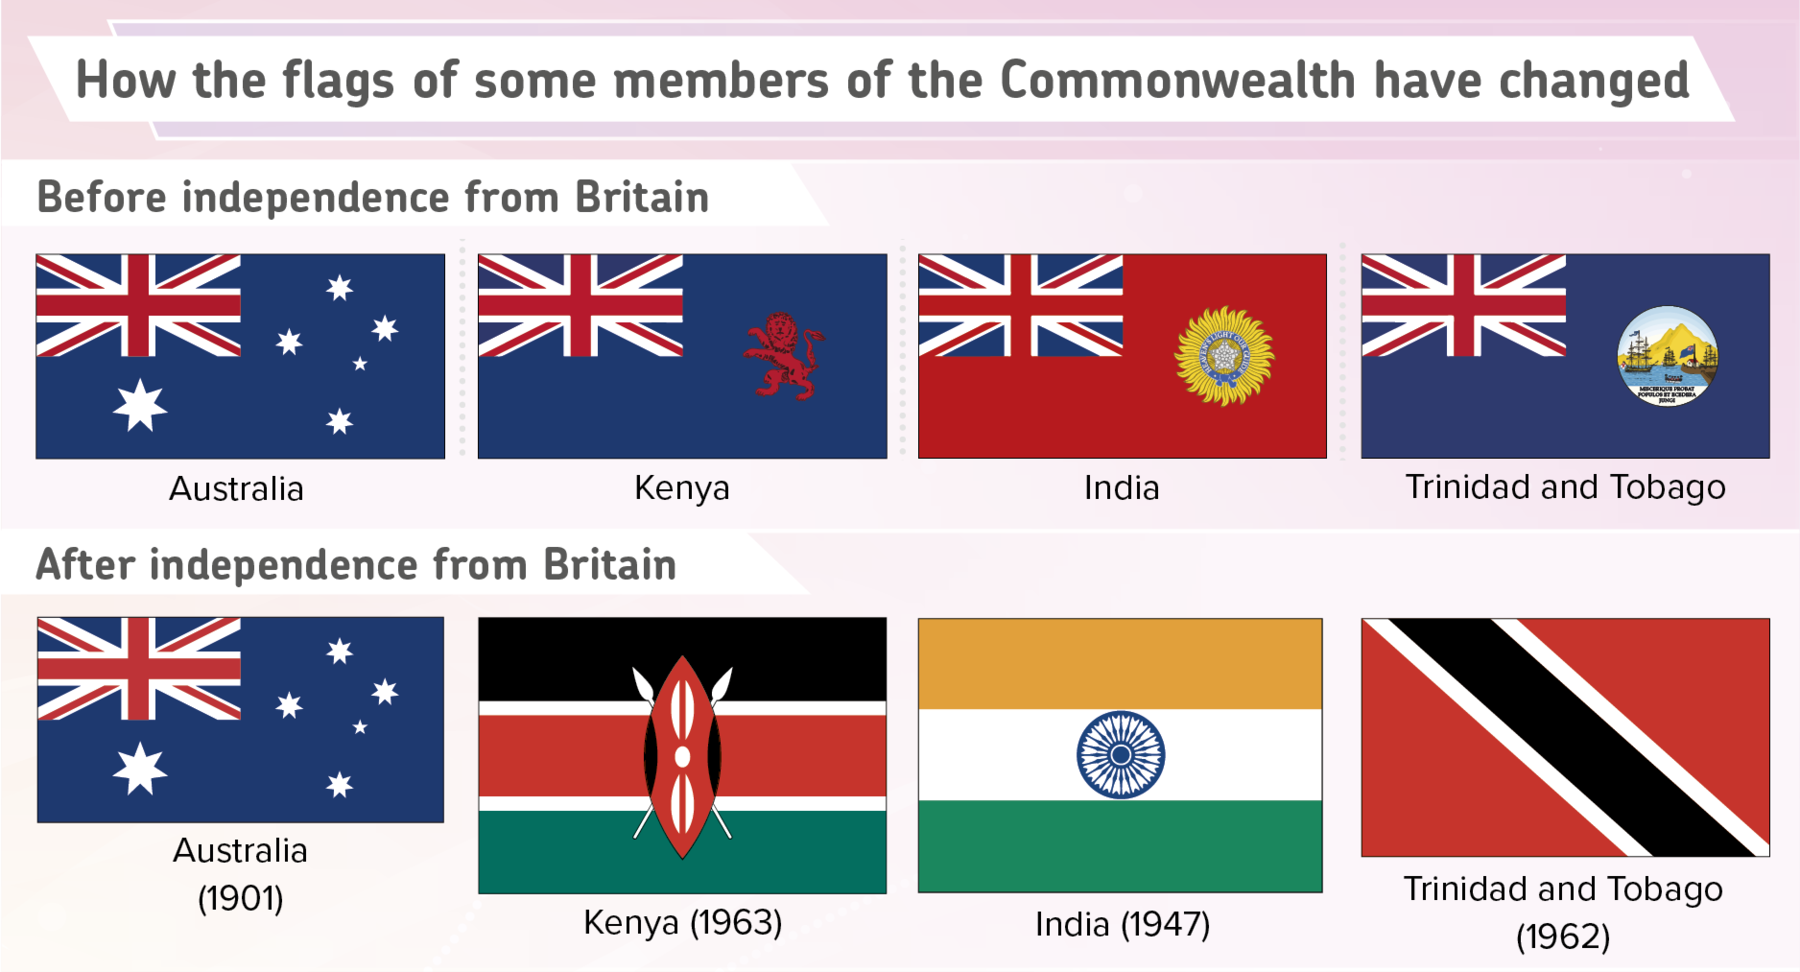 Ilustração. Título: How the flags of some members of the Commonwealth have changed. Subtítulo: Before independence from Britain. Bandeiras. Australia: Fundo em azul-escuro, com a bandeira do Reino Unido na ponta superior esquerda. Abaixo dela, uma estrela grande branca e ao lado, cinco estrelas menores brancas formando o Cruzeiro do Sul. Kenya: Fundo em azul-escuro, com a bandeira do Reino Unido na ponta superior esquerda. À direita, silhueta de um leão em vermelho, em pé, voltado para a esquerda. India: Fundo em vermelho, com a bandeira do Reino Unido na ponta superior esquerda. À direita, círculo com plumas em amarelo. Trinidad and Tobago. Fundo em azul-escuro, com a bandeira do Reino Unido na ponta superior esquerda. À direita, círculo com água em azul-claro, embarcações e morro em amarelo, com céu em azul-claro. Subtítulo: After independence from Britain. Australia, 1901. A bandeira continua igual à que era antes da independência. Kenya, 1963. Faixas na horizontal, na parte superior, em preto, abaixo em vermelho, e na parte inferior, em verde. Entre as três faixas, uma fina em branco. Ao centro, uma forma similar a um escudo em vermelho, com detalhes em branco e preto, e duas lanças em branco cruzadas atrás do escudo. India, 1947. Três faixas na horizontal, na parte superior em laranja, ao centro em branco e na parte inferior, em verde. Ao centro, círculo em azul. Trinidad and Tobago, 1962. Fundo em vermelho, com uma faixa na diagonal em preto, com detalhes em branco.